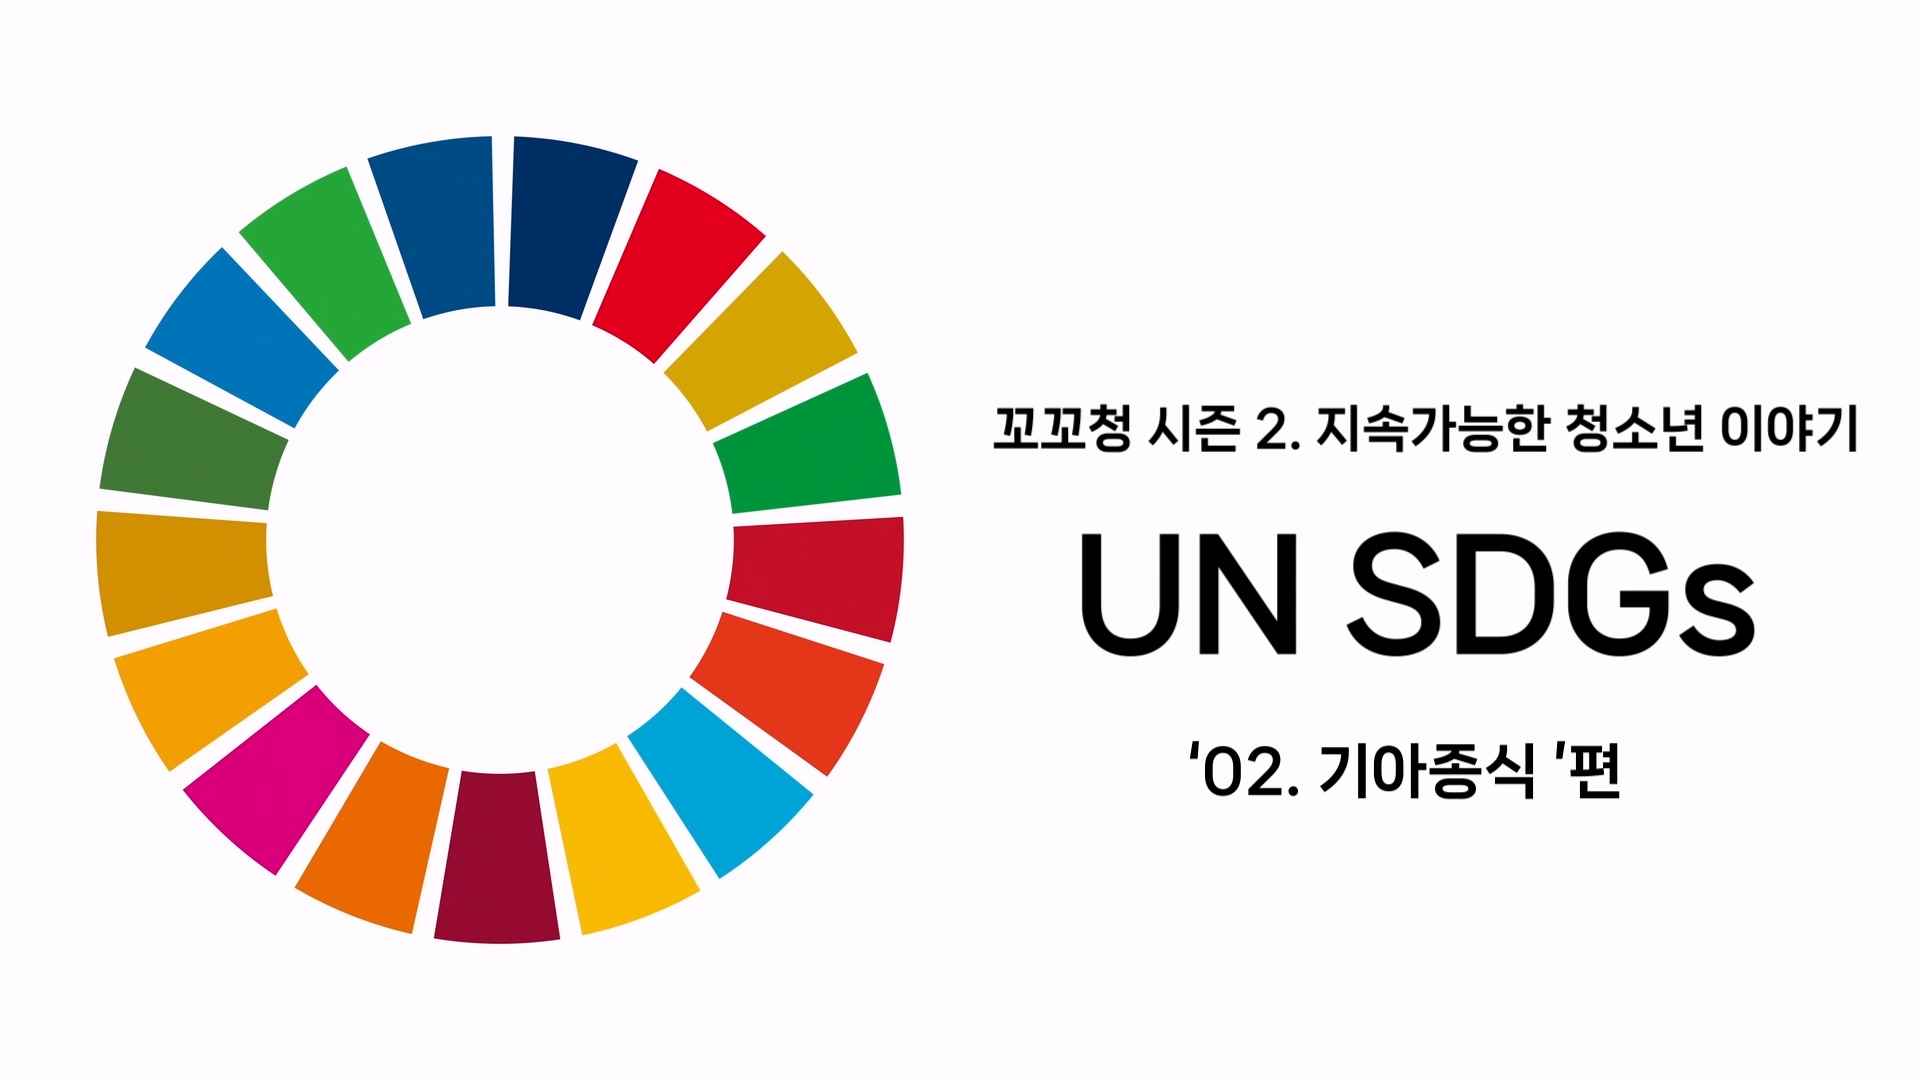 꼬꼬청 시즌 2. UN SDGs 목표 2. 기아종식